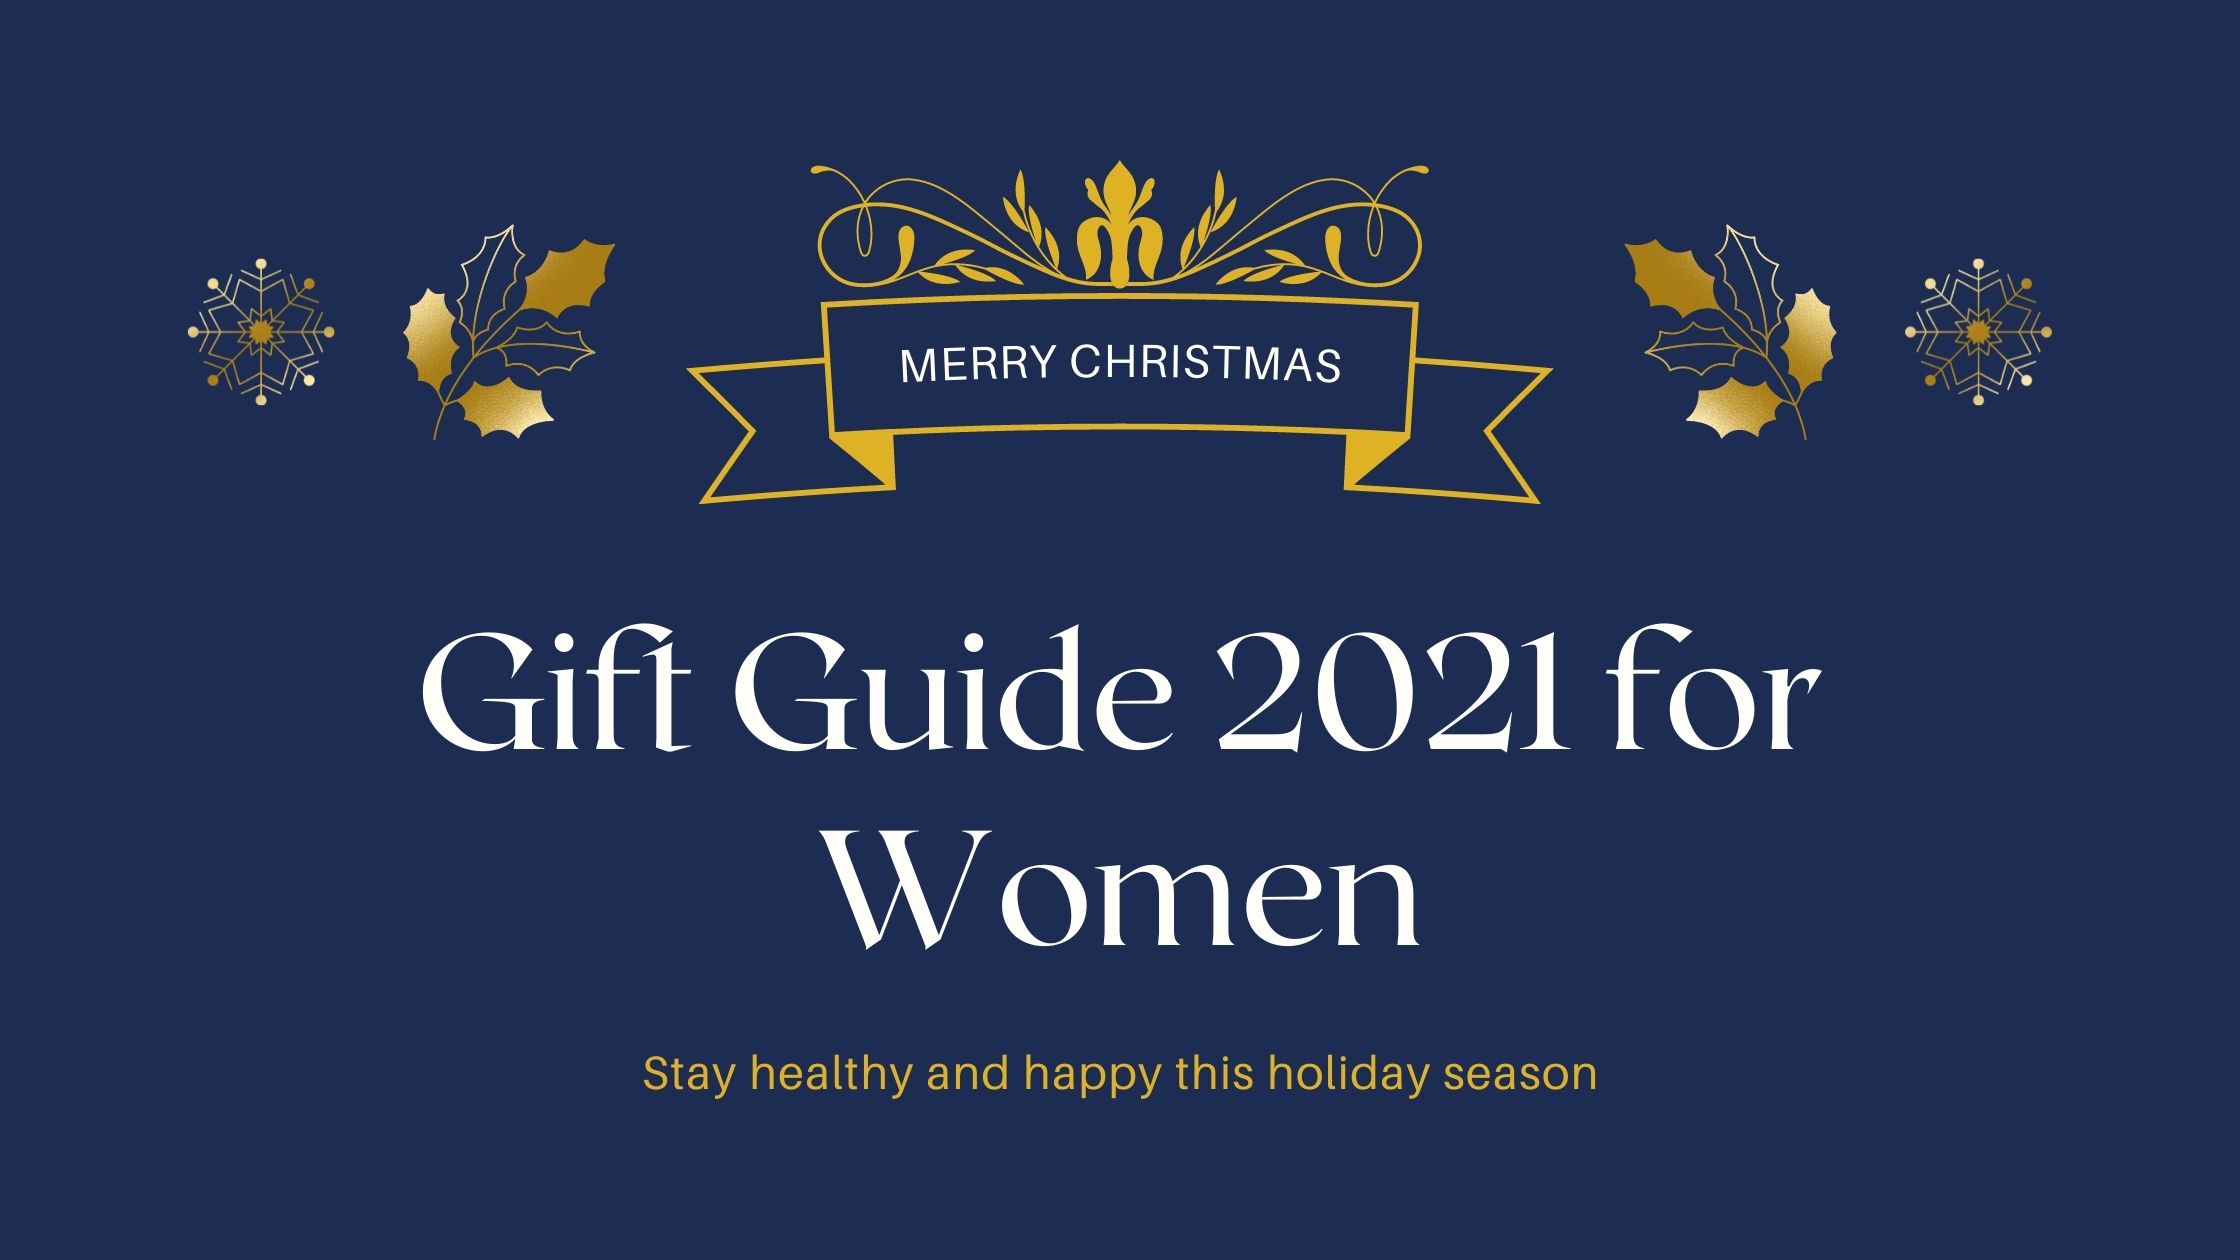 Gift Guide 2021 for Women